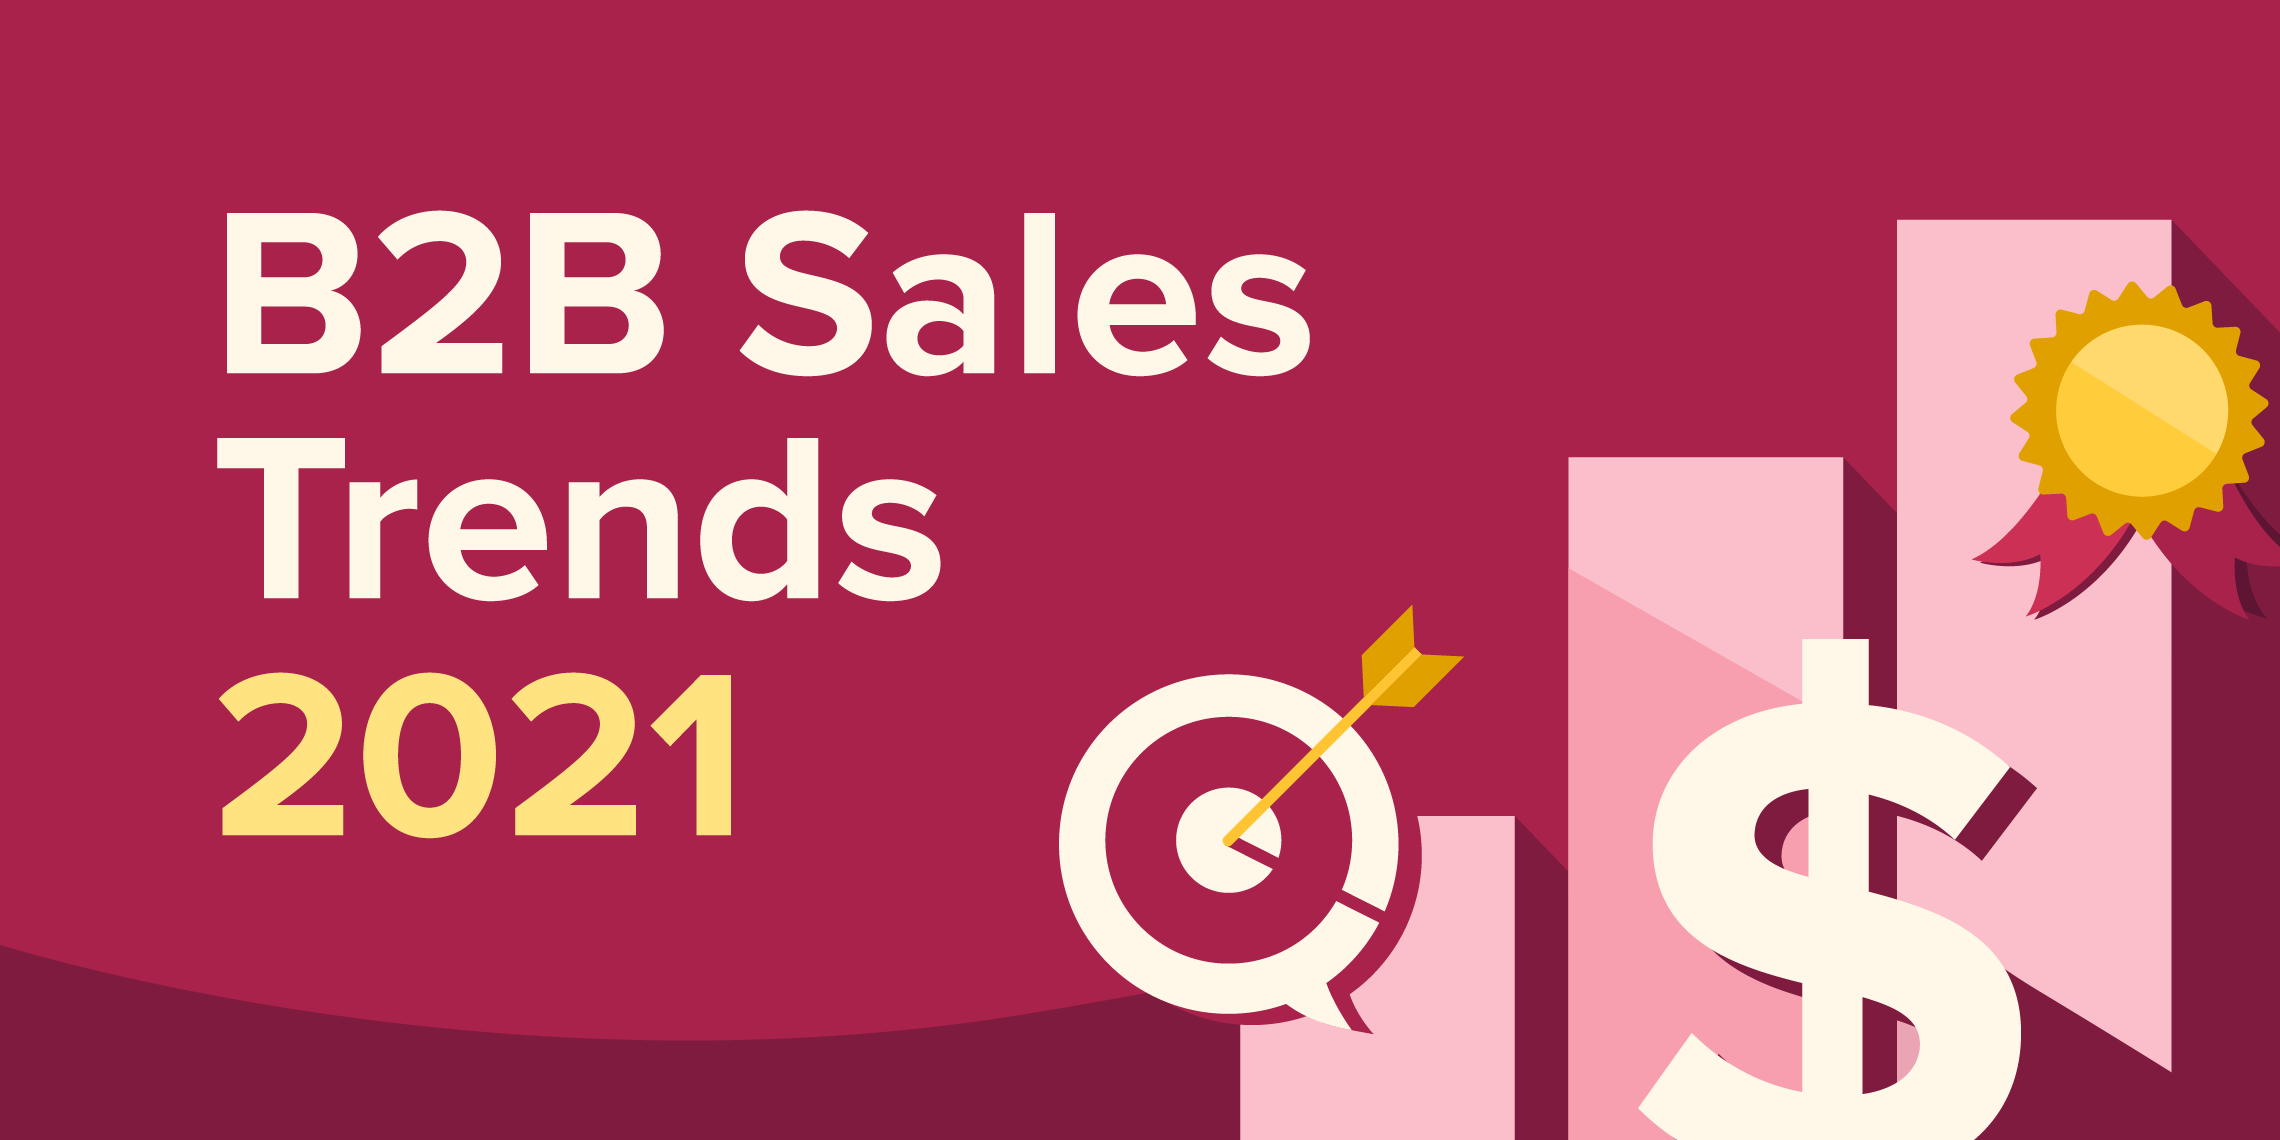 B2B Sales Trends 2021